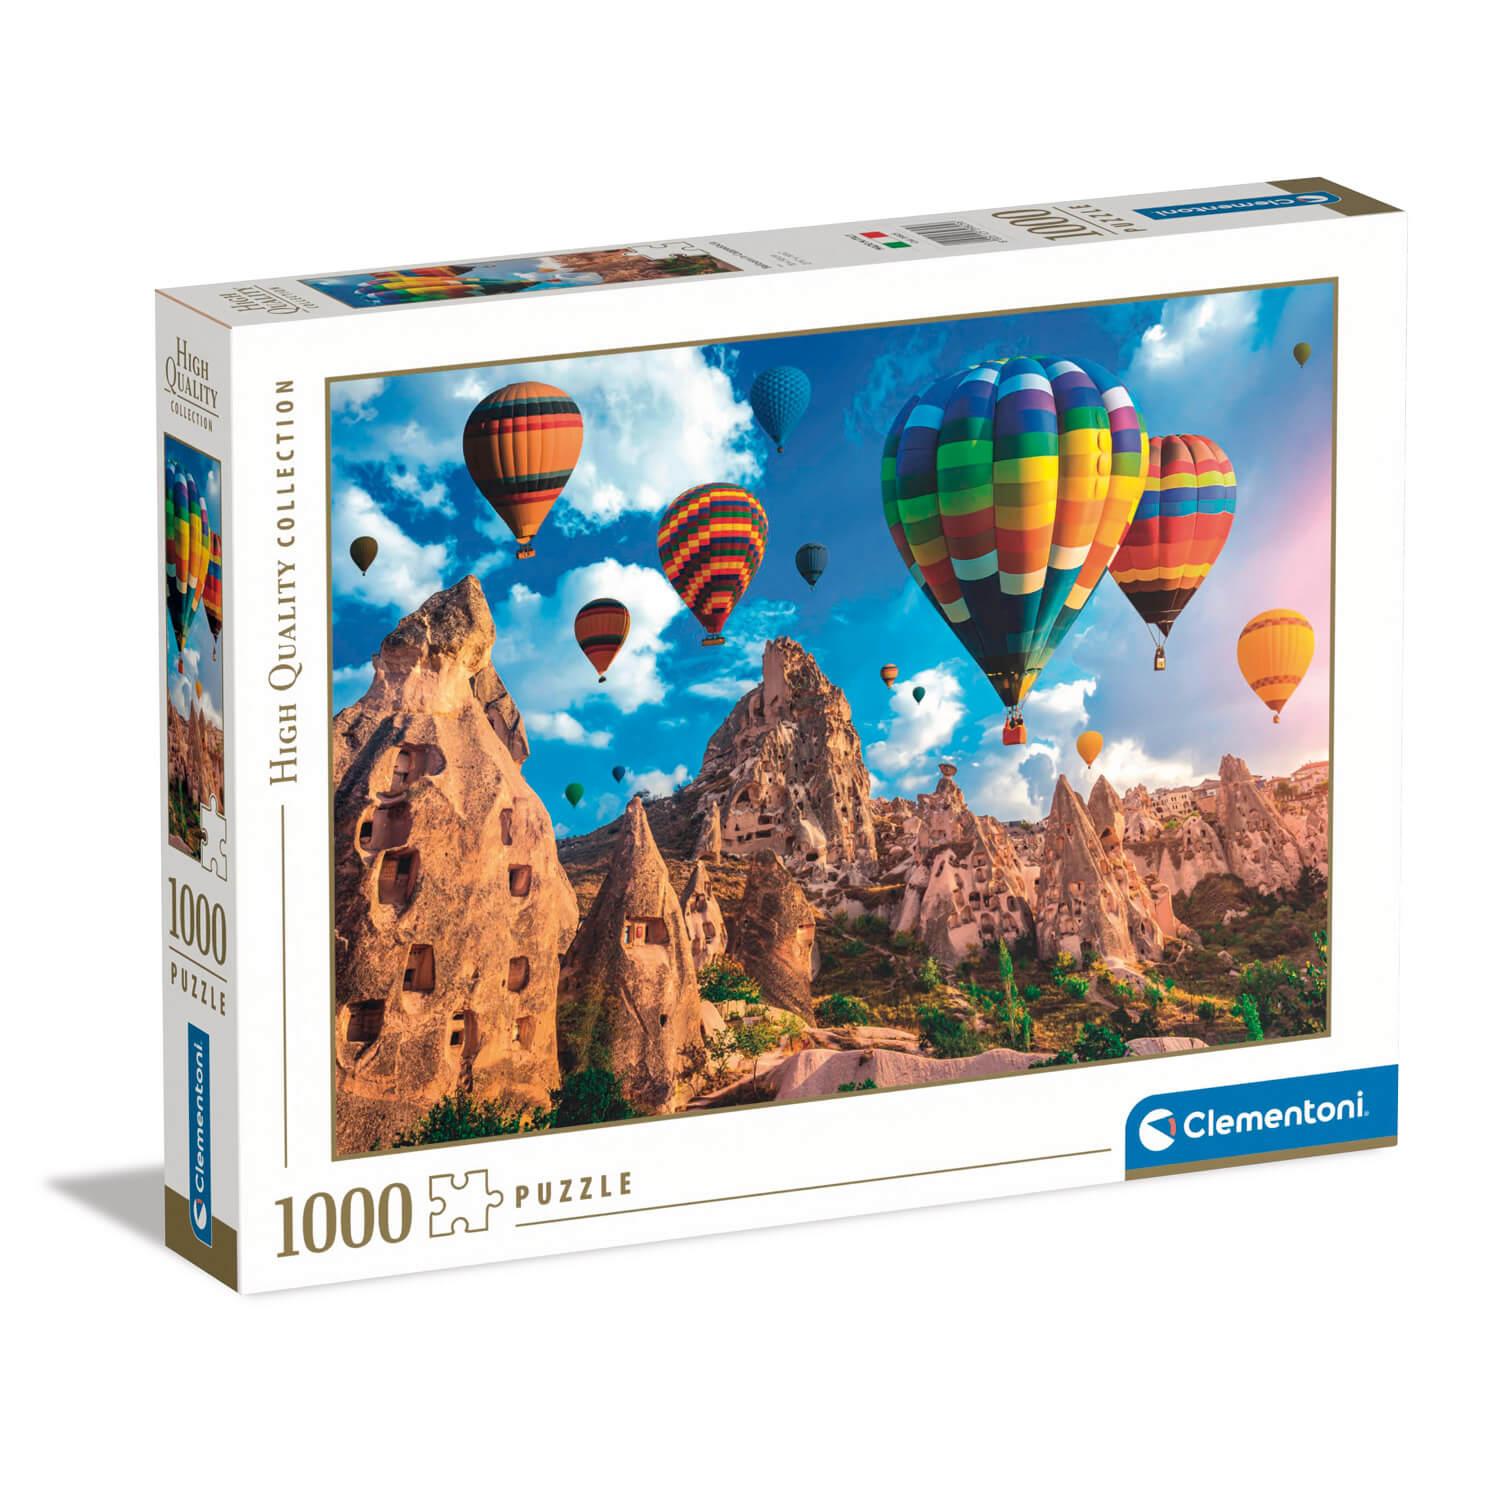 Guarda Puzzles Clementoni 500-2000 Piezas 